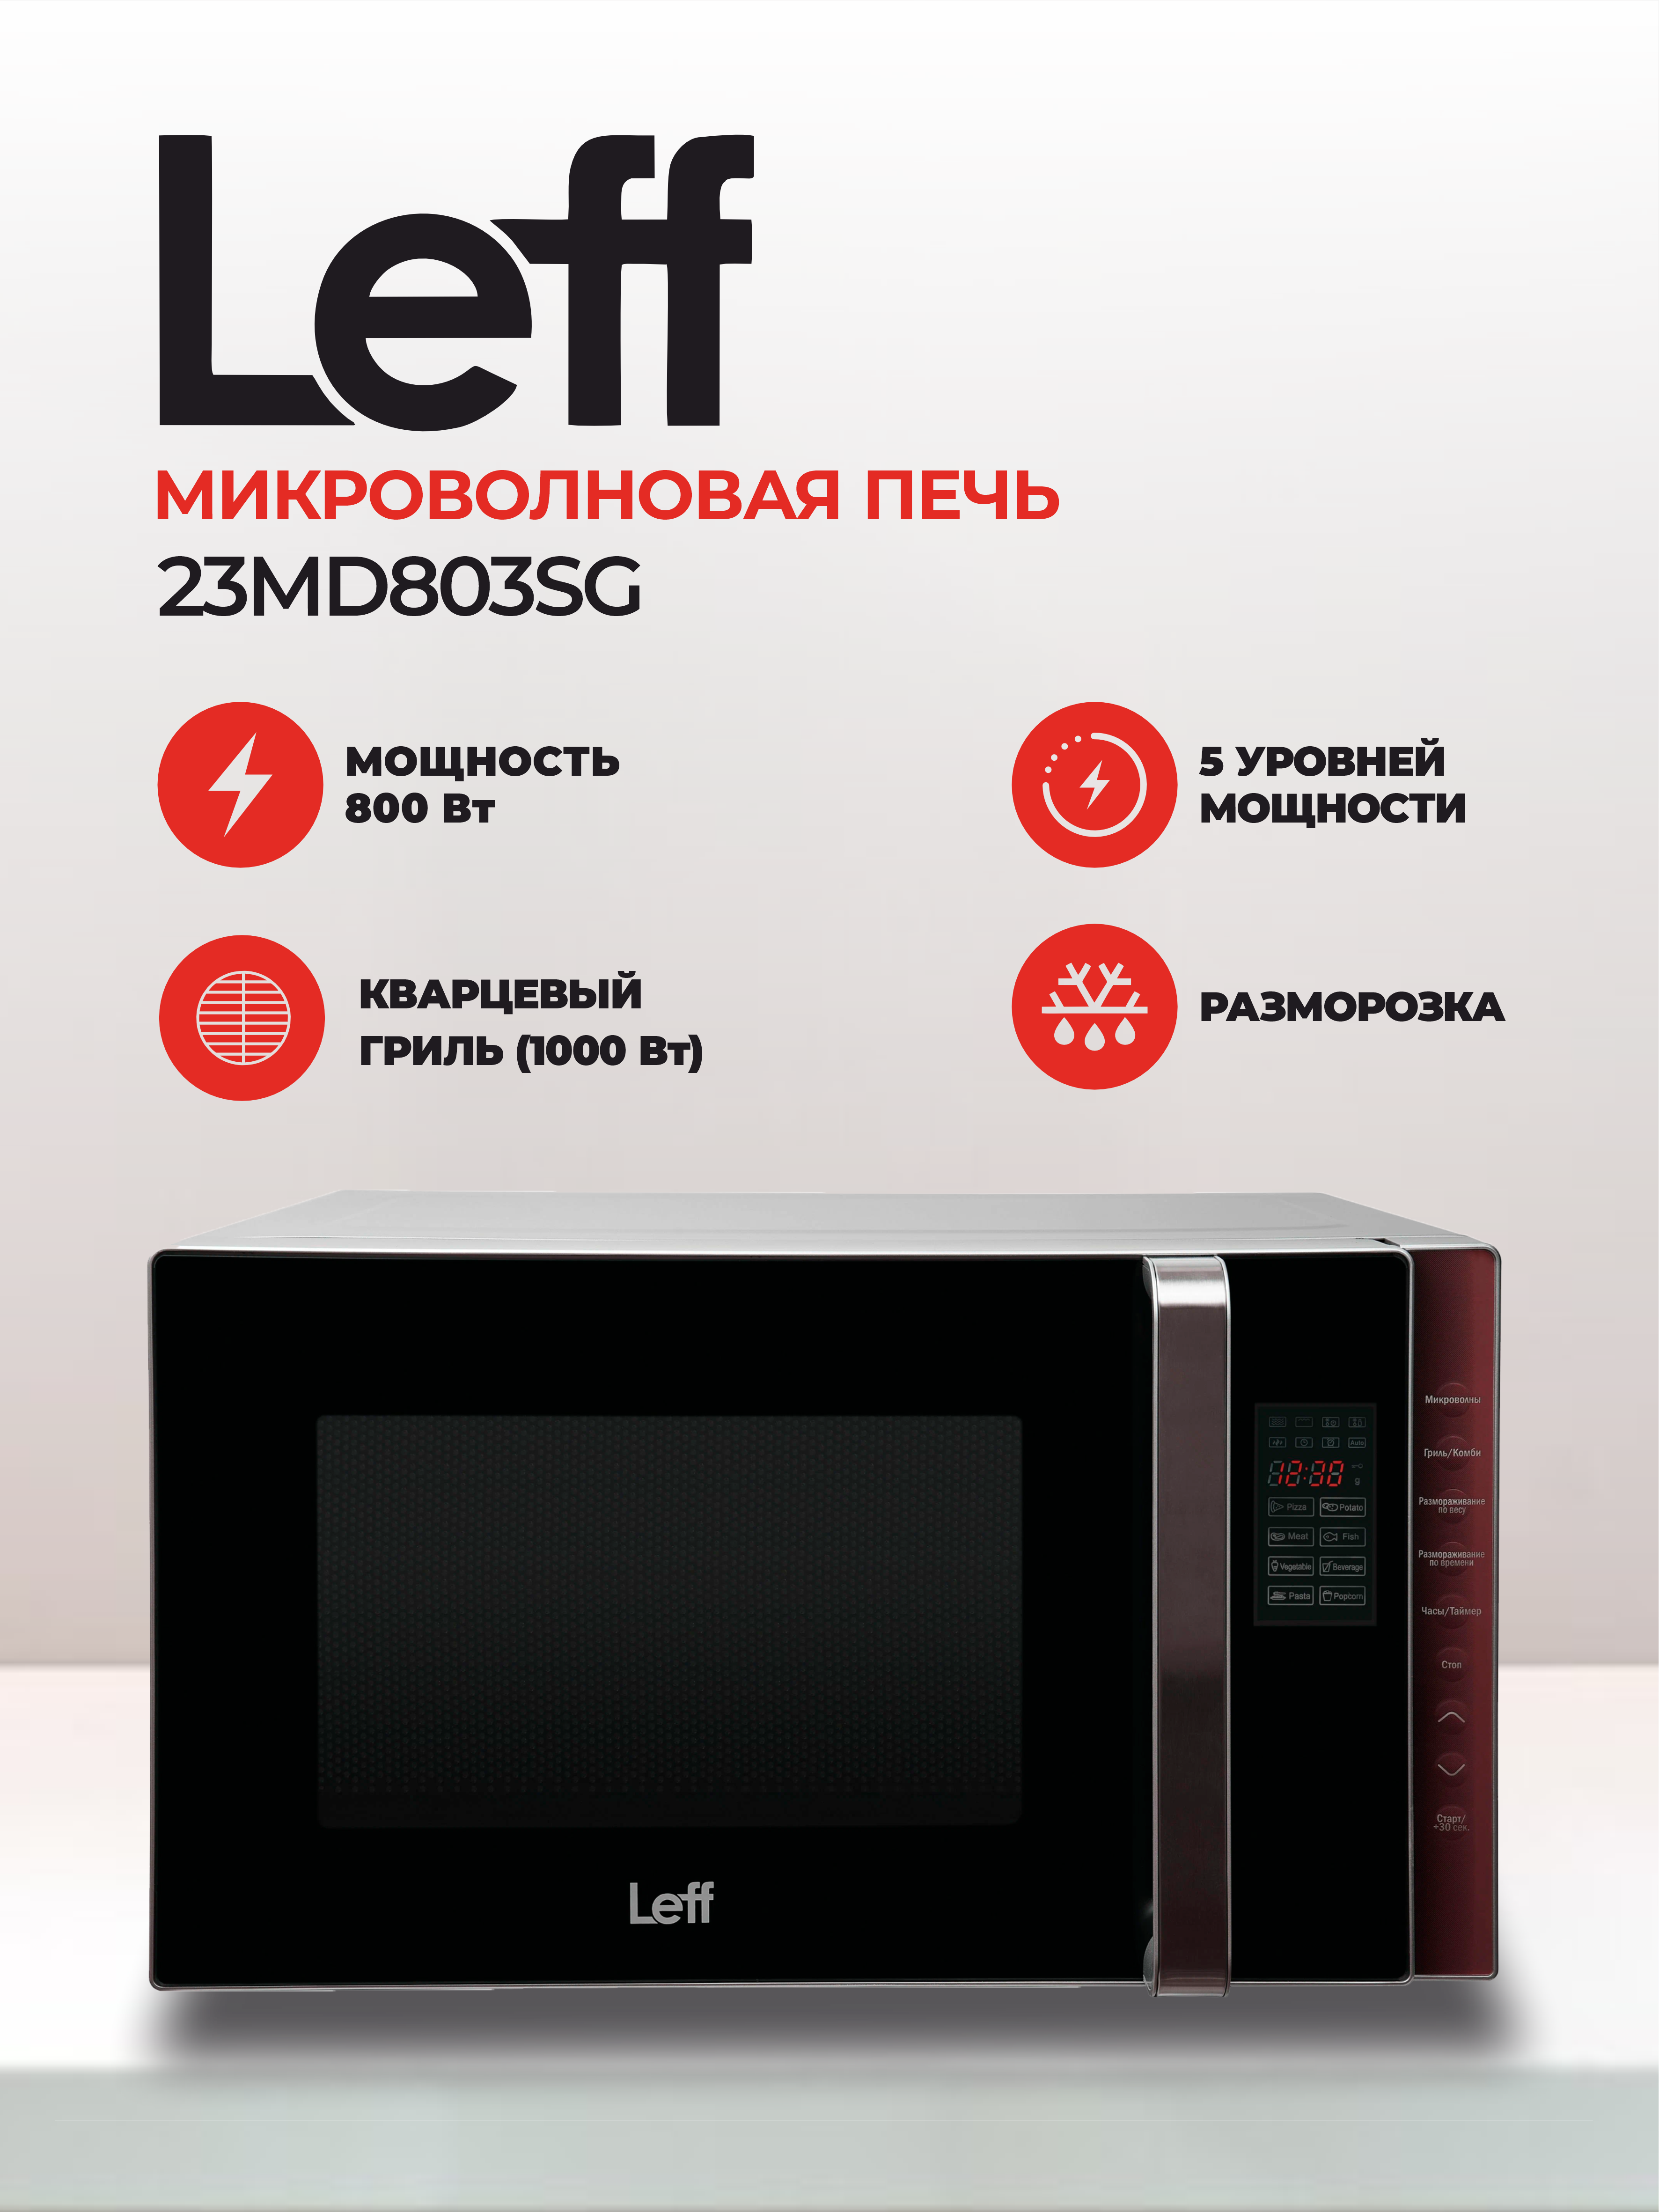 Микроволновая печь (СВЧ) Leff 23MD803SG купить в Красноярске